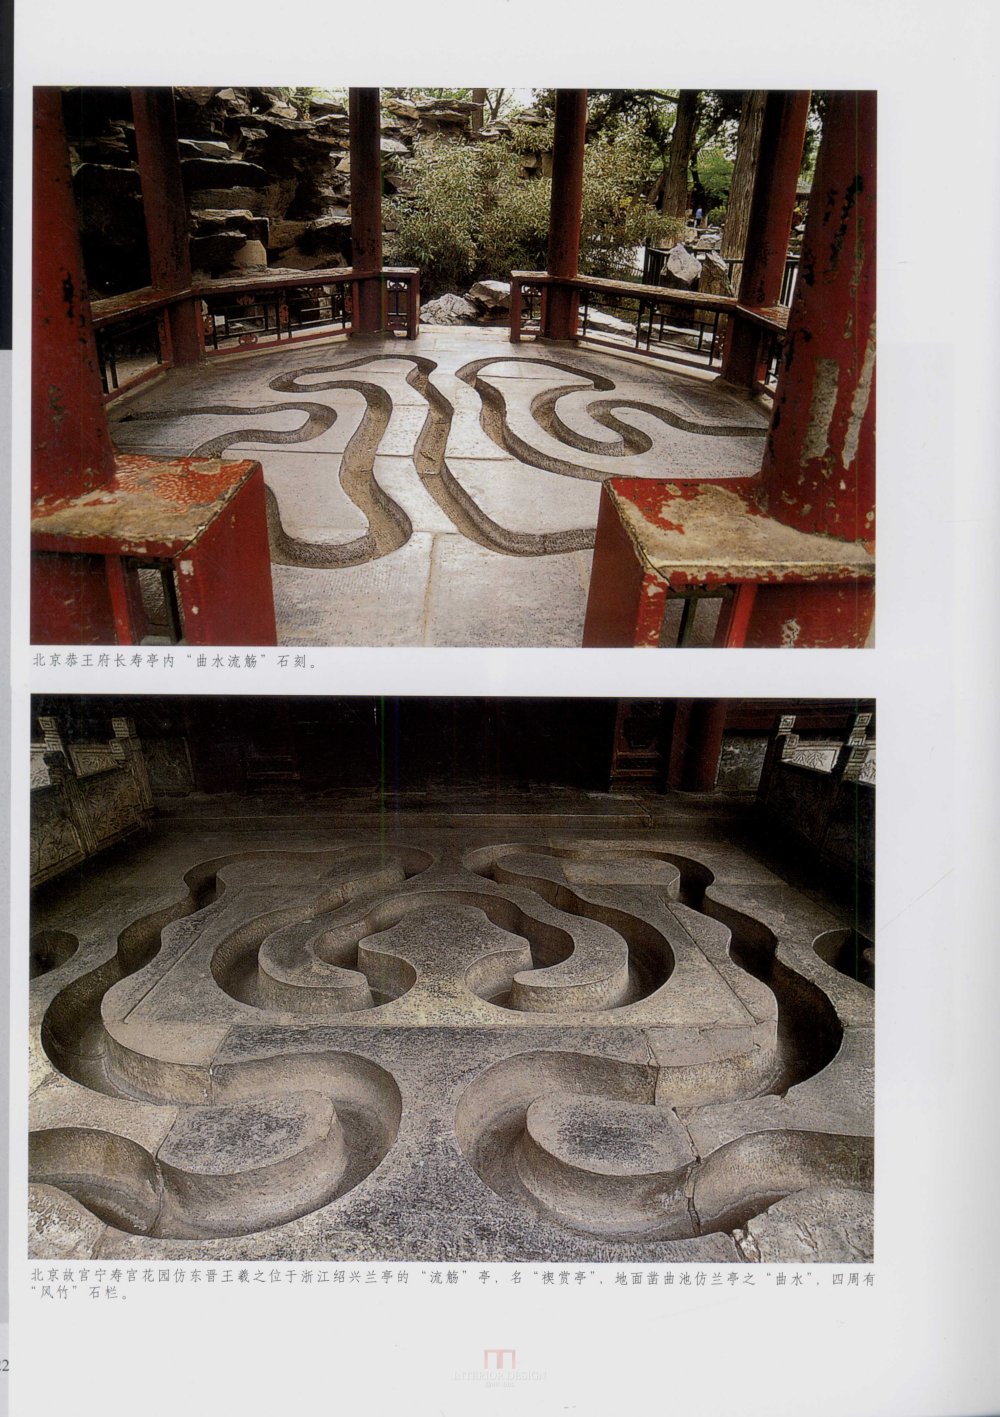 中国古代建筑 石雕_kobe 0329.jpg